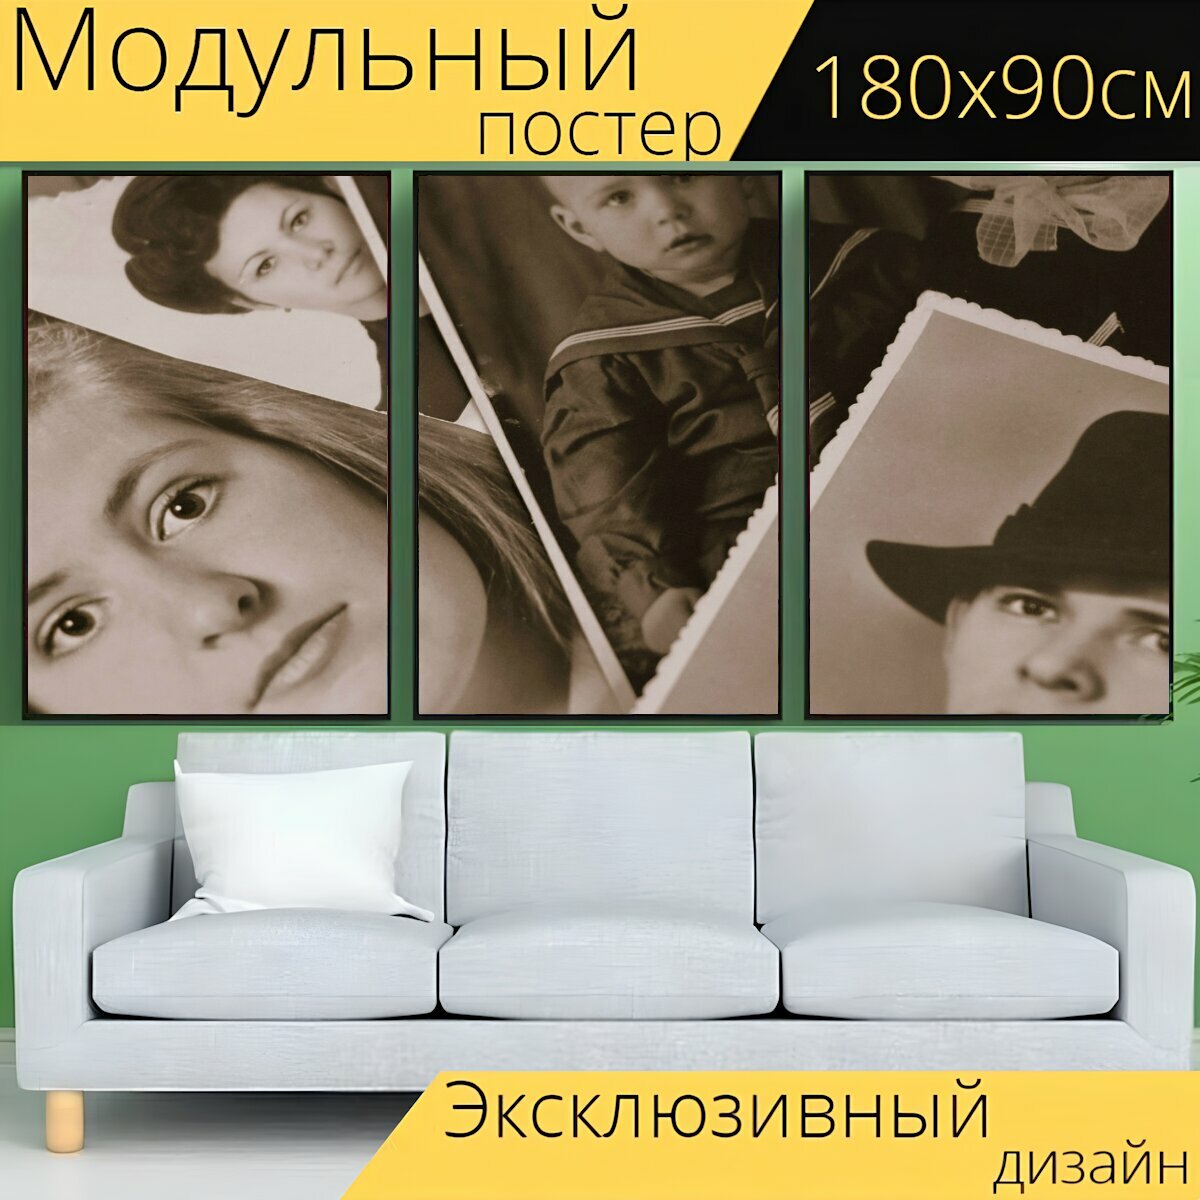 Модульный постер "Ретро, фотоальбом, память" 180 x 90 см. для интерьера